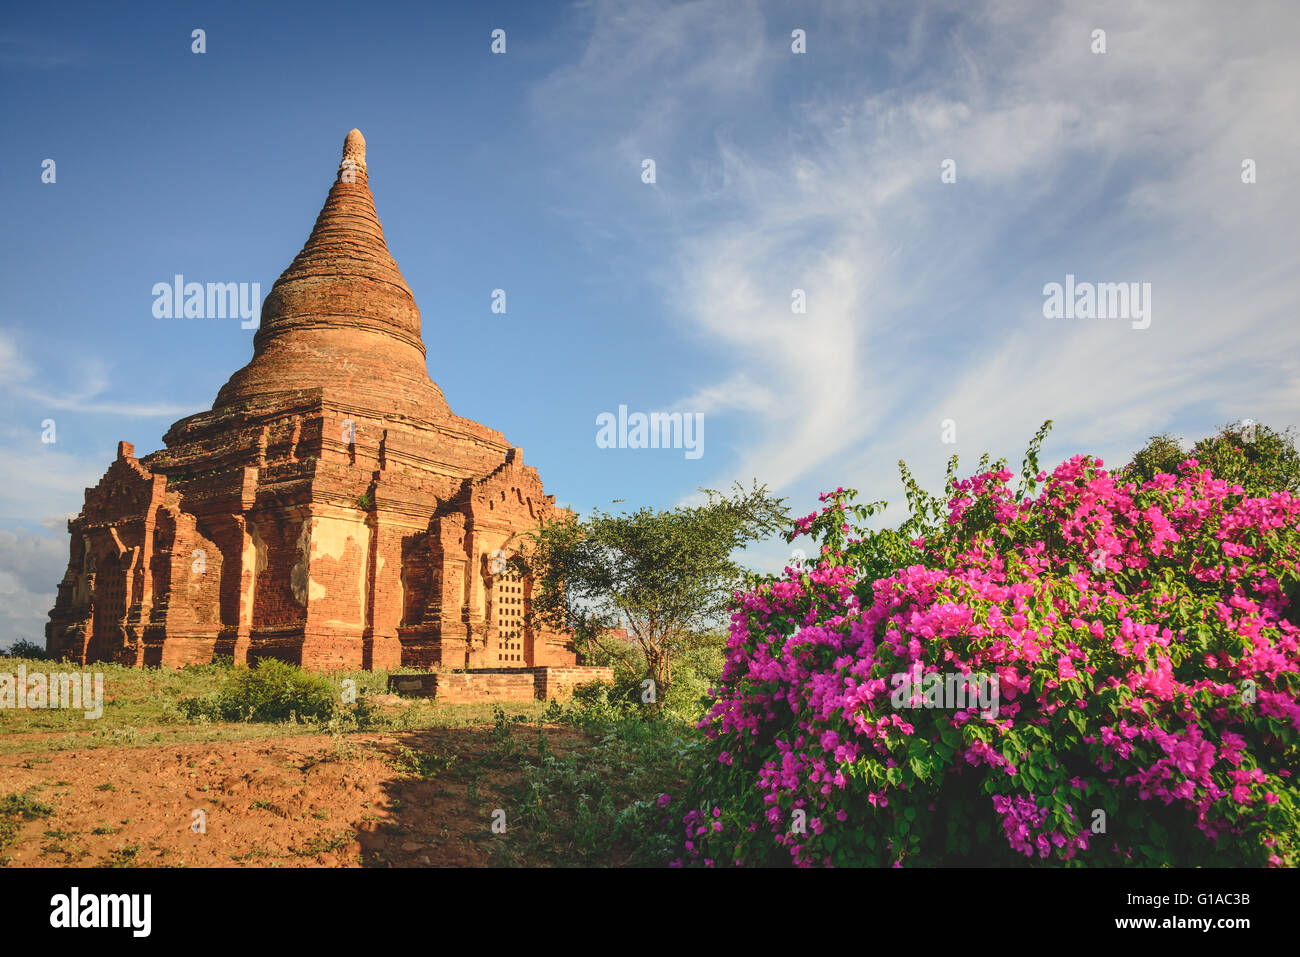 Bagan temples in Myanmar Stock Photo